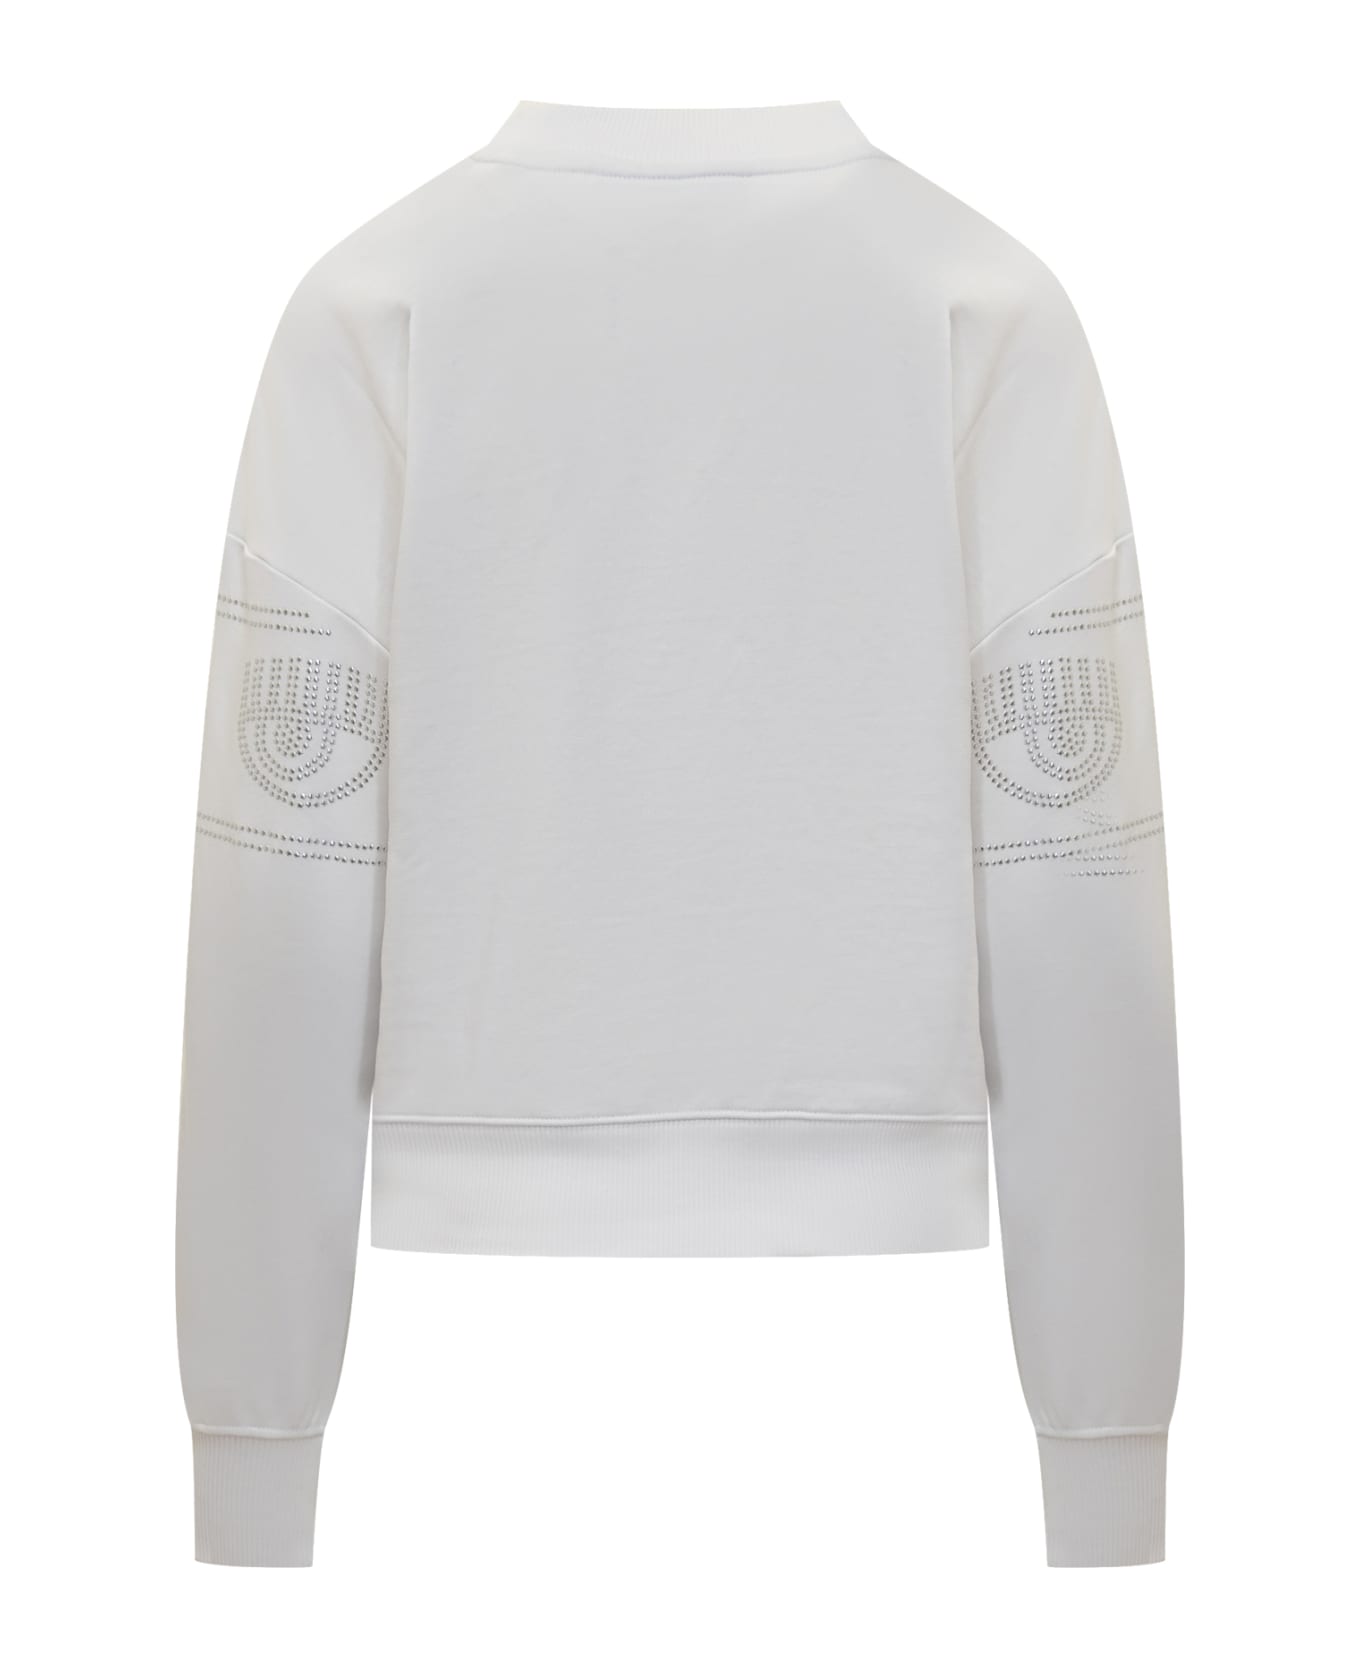 Chiara Ferragni Logomania 317 Sweatshirt - WHITE